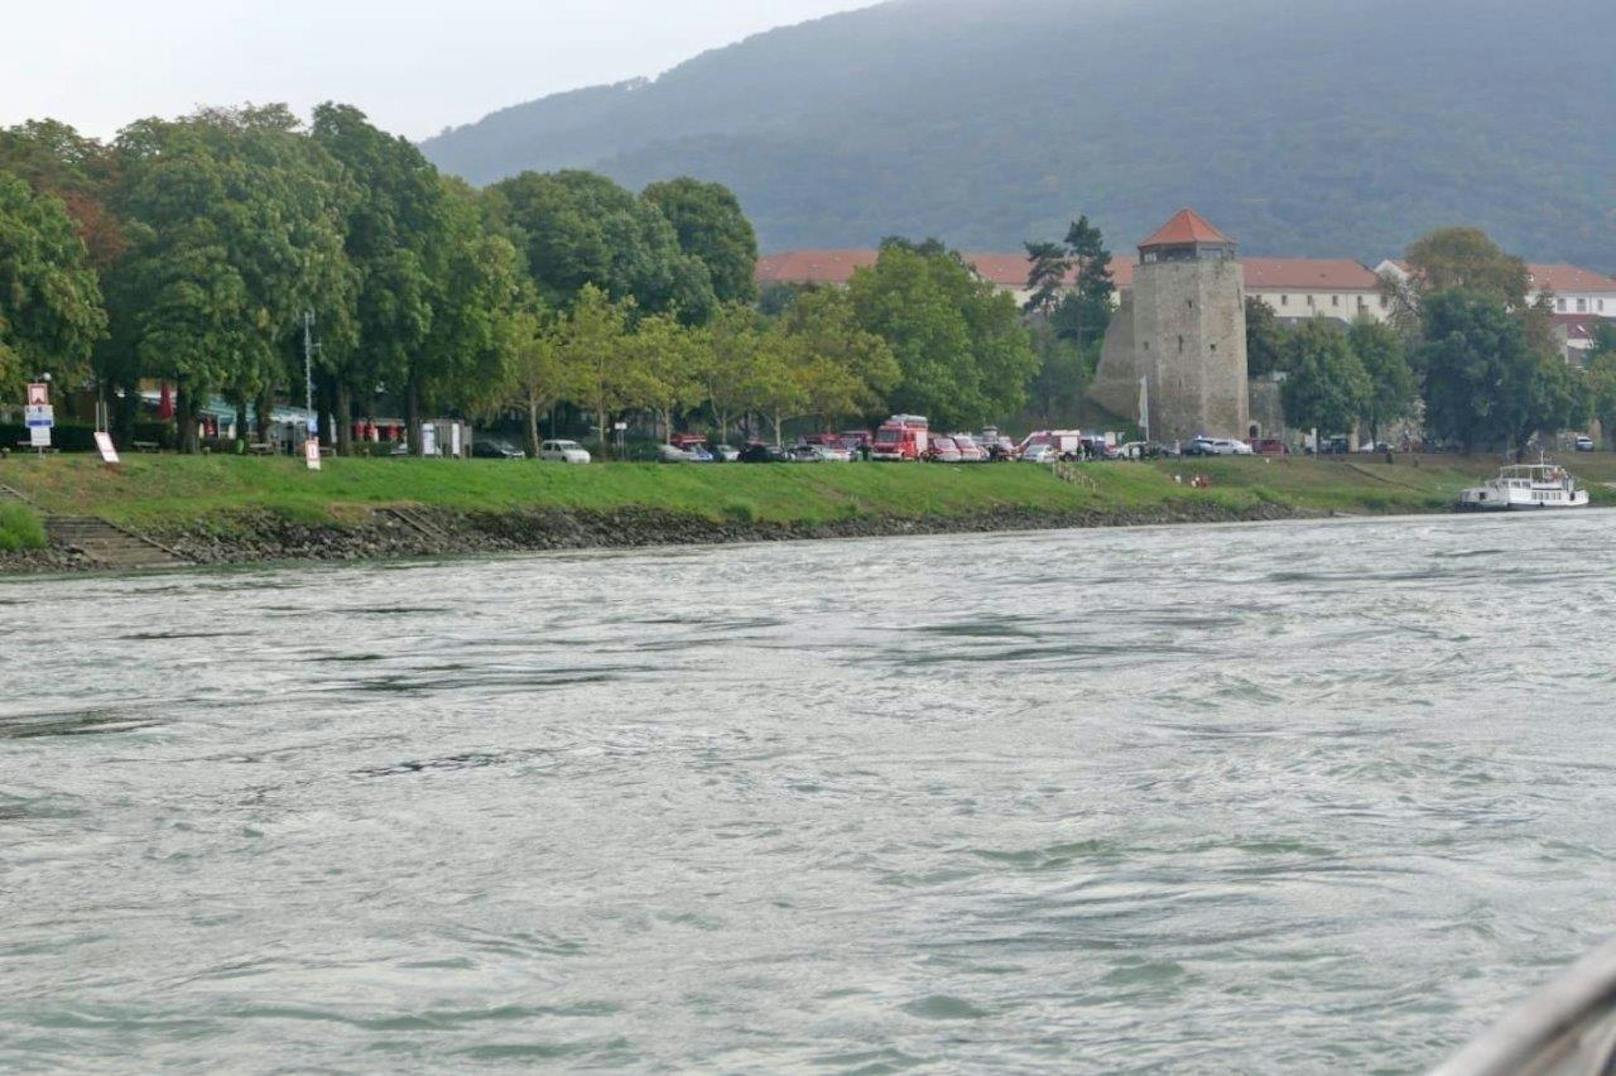 Bei einem Bootsunfall in Hainburg an der Donau wurden zumindest zwei junge Frauen reanimiert.